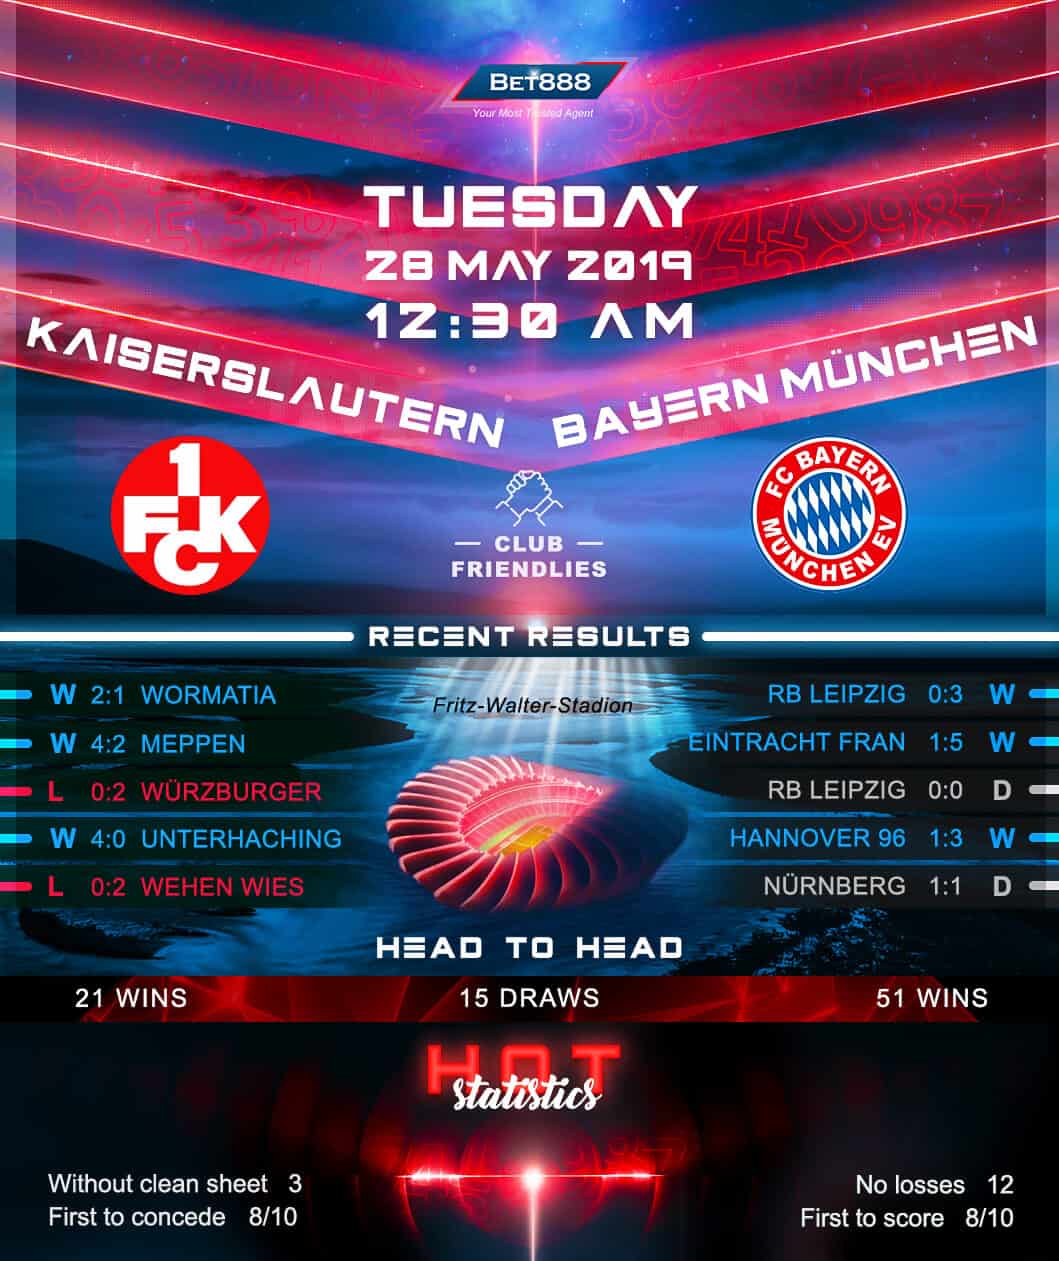 Kaiserslautern vs Bayern Munich﻿ 28/05/19